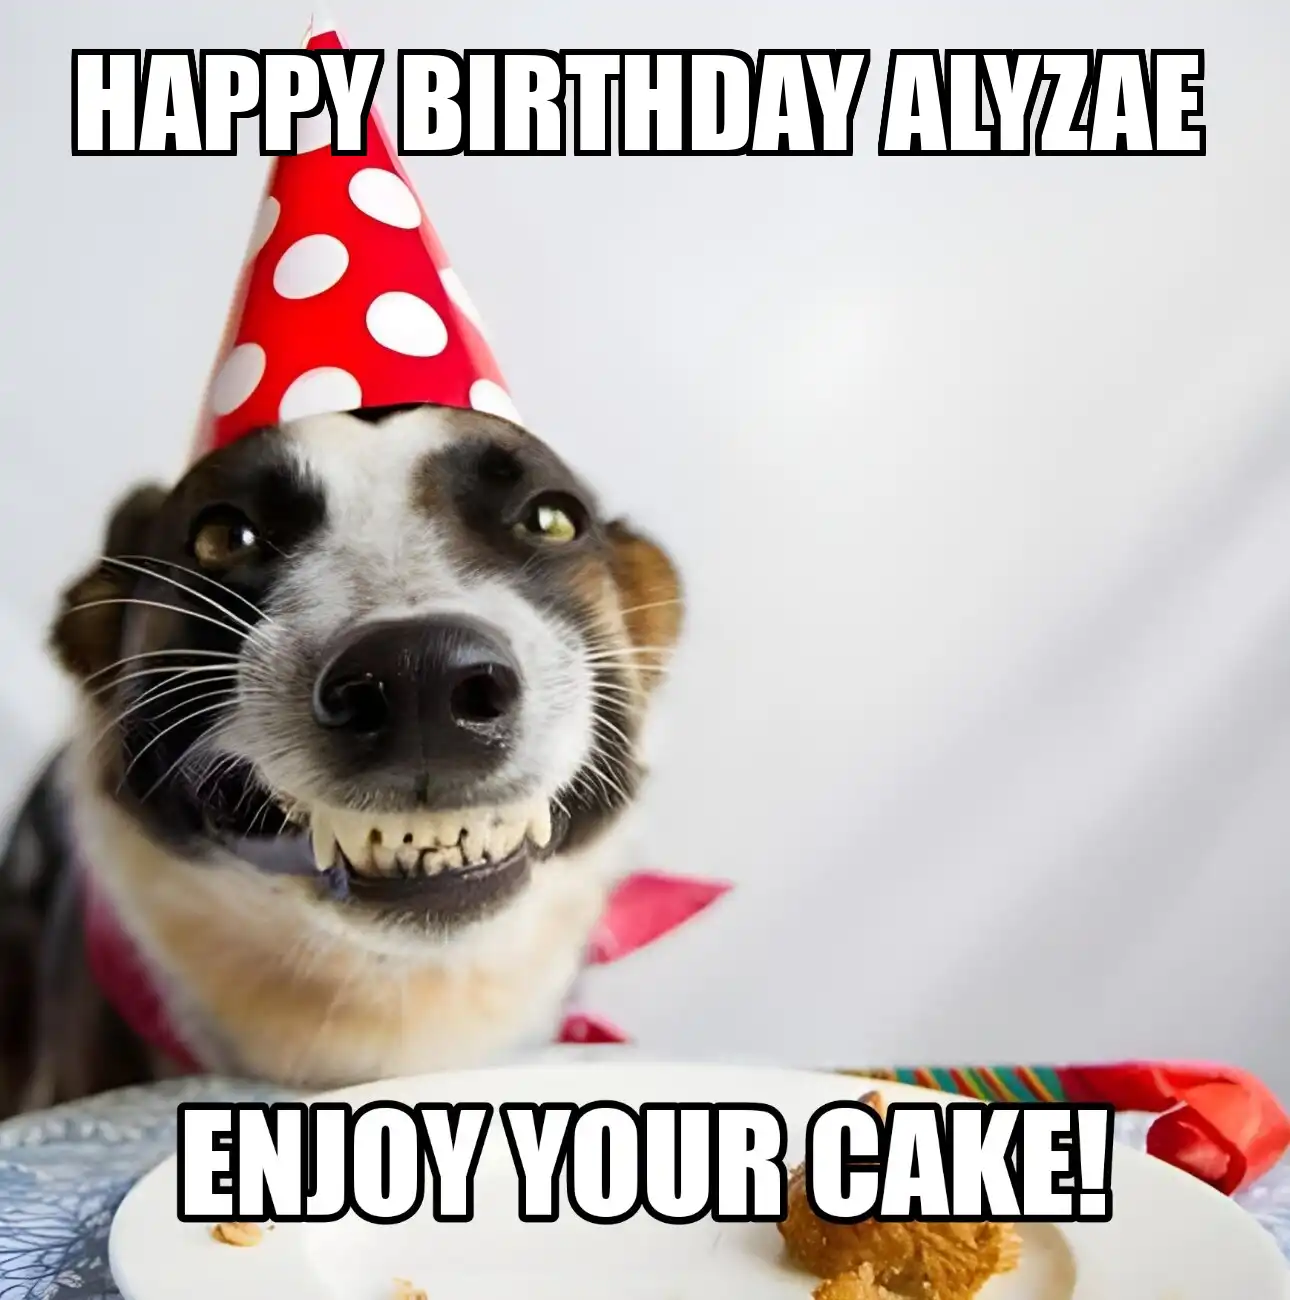 Happy Birthday Alyzae Enjoy Your Cake Dog Meme